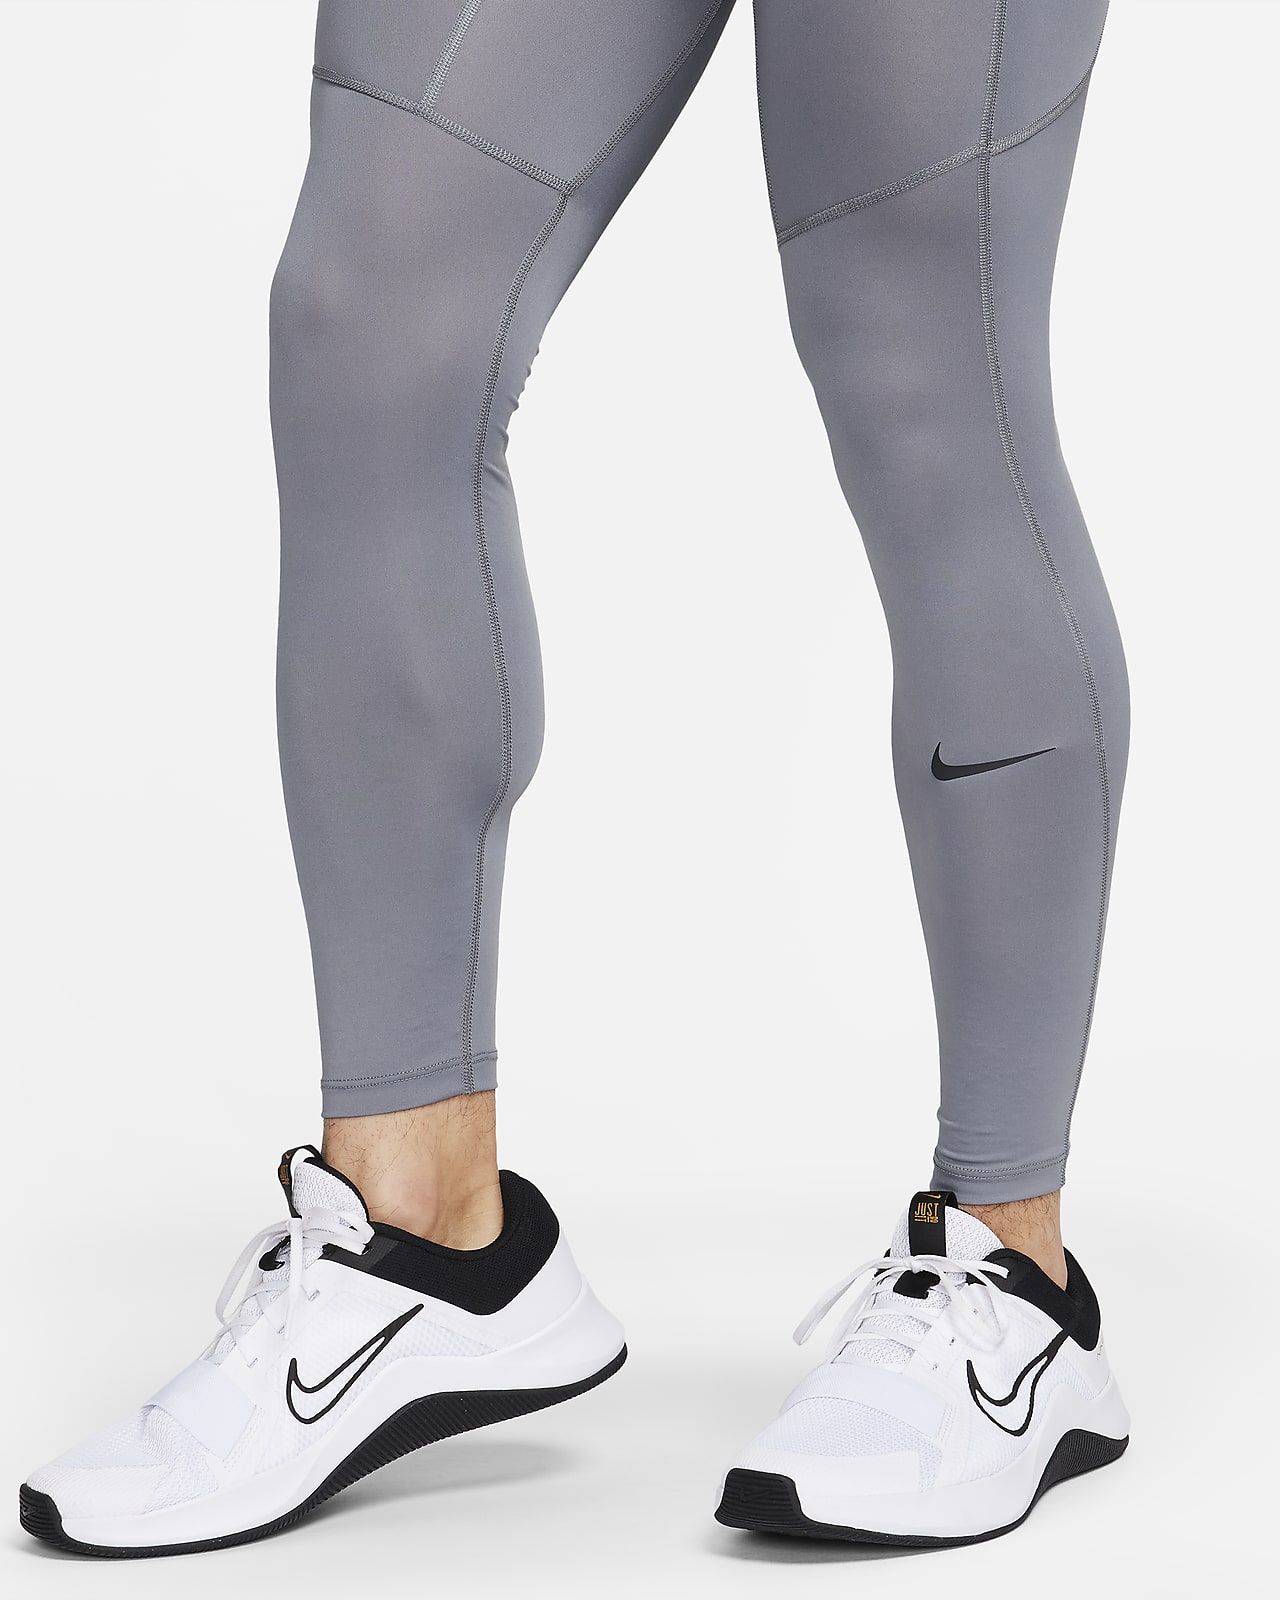 Men's Tights & Leggings. Nike SG